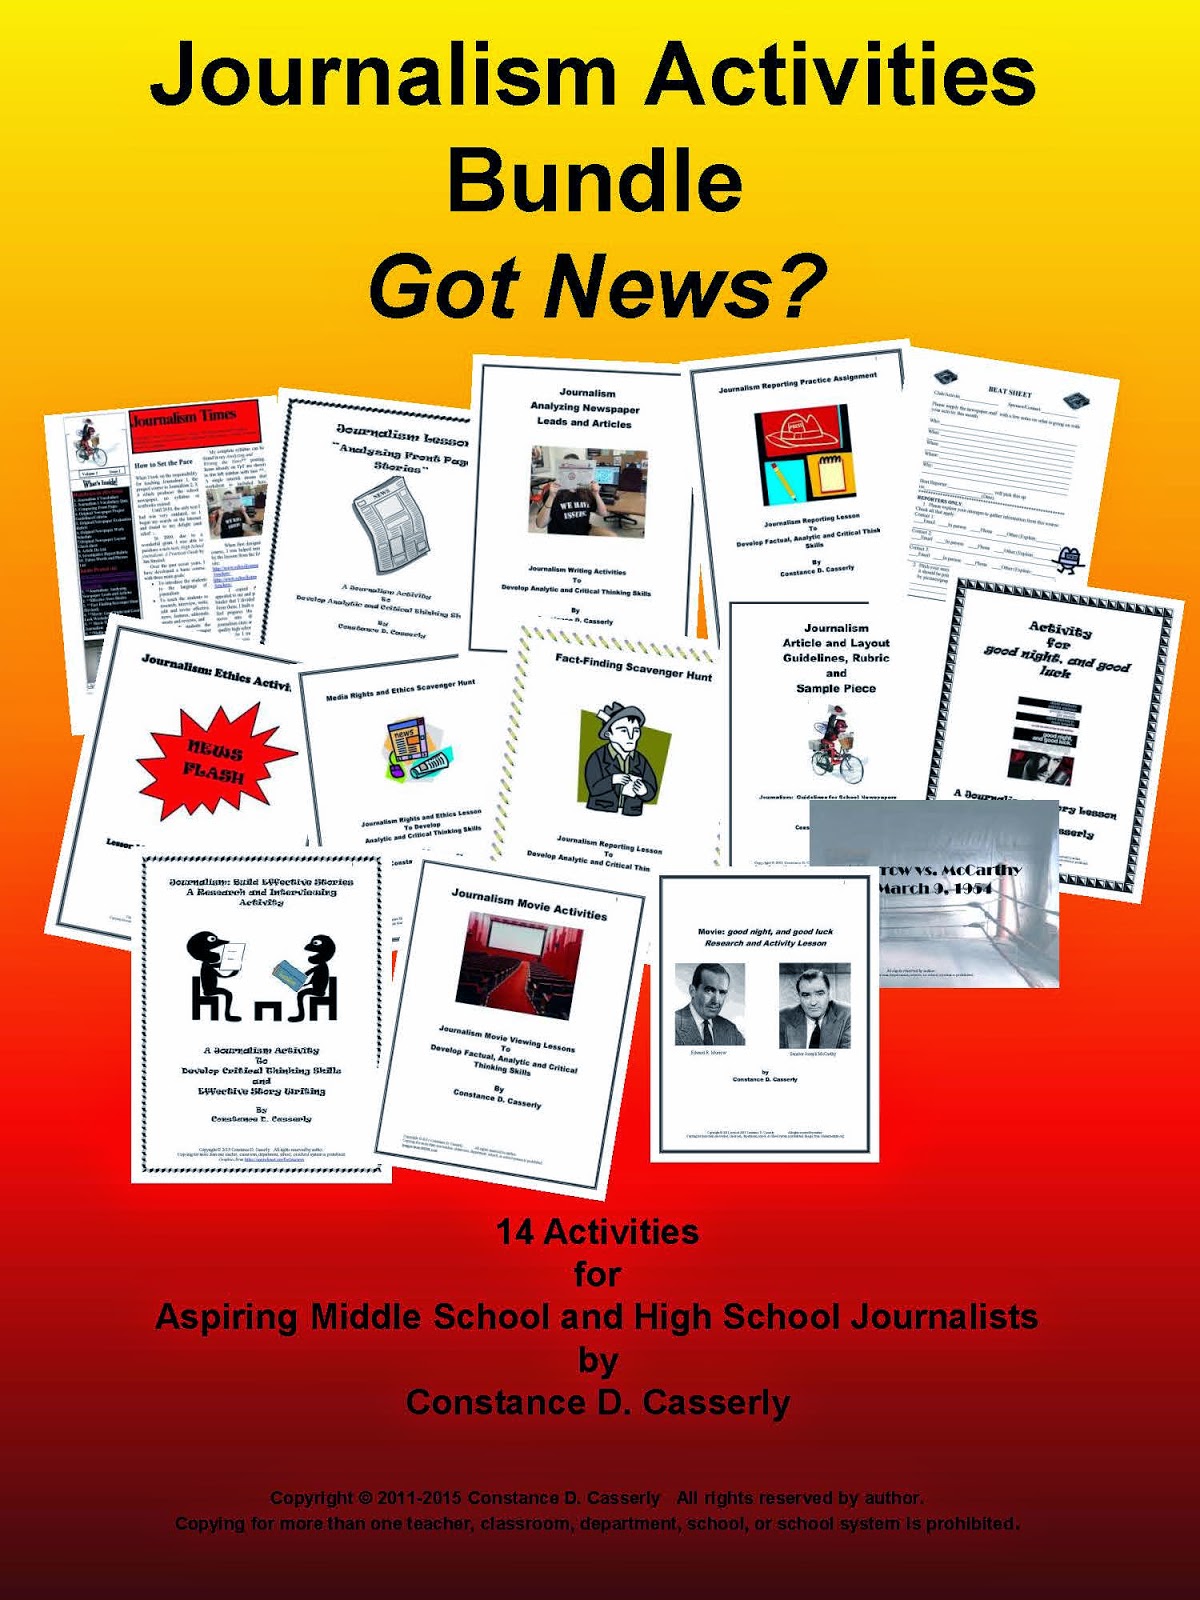 Journalism Activities Bundle cover